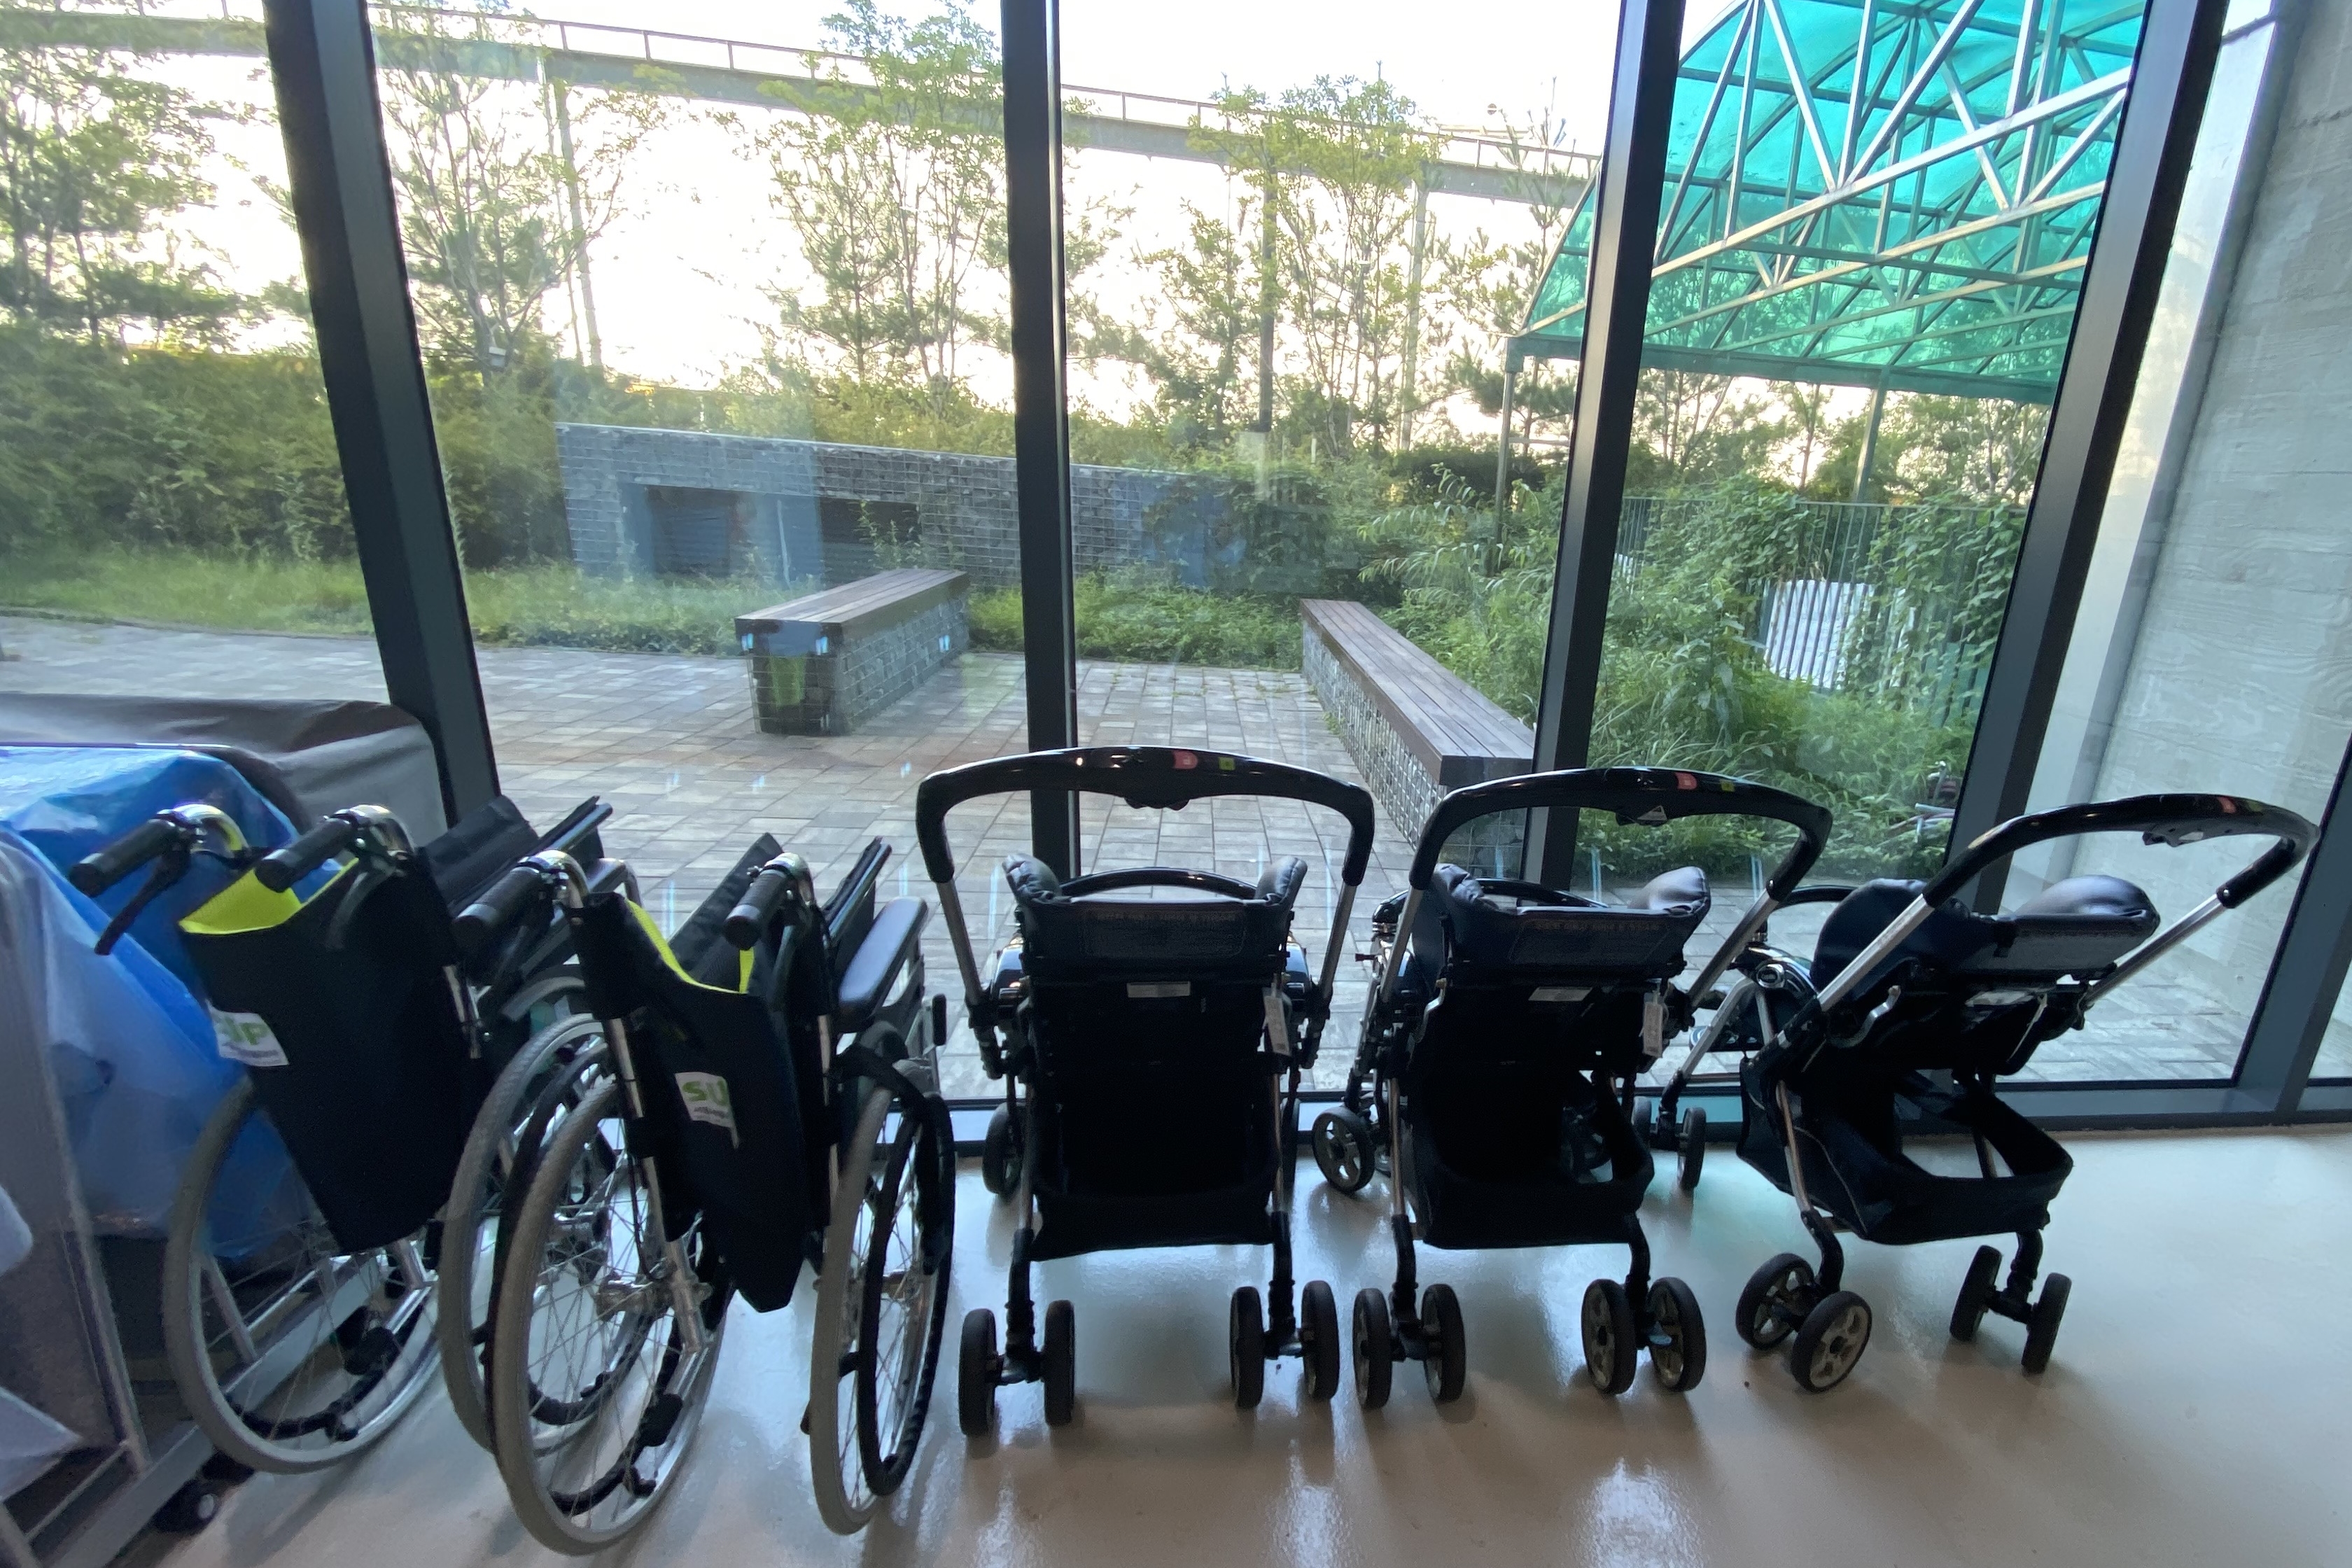 안내데스크/안내판0 : 휠체어와 유아차를 대여 가능한 서울새활용플라자 내부 전경